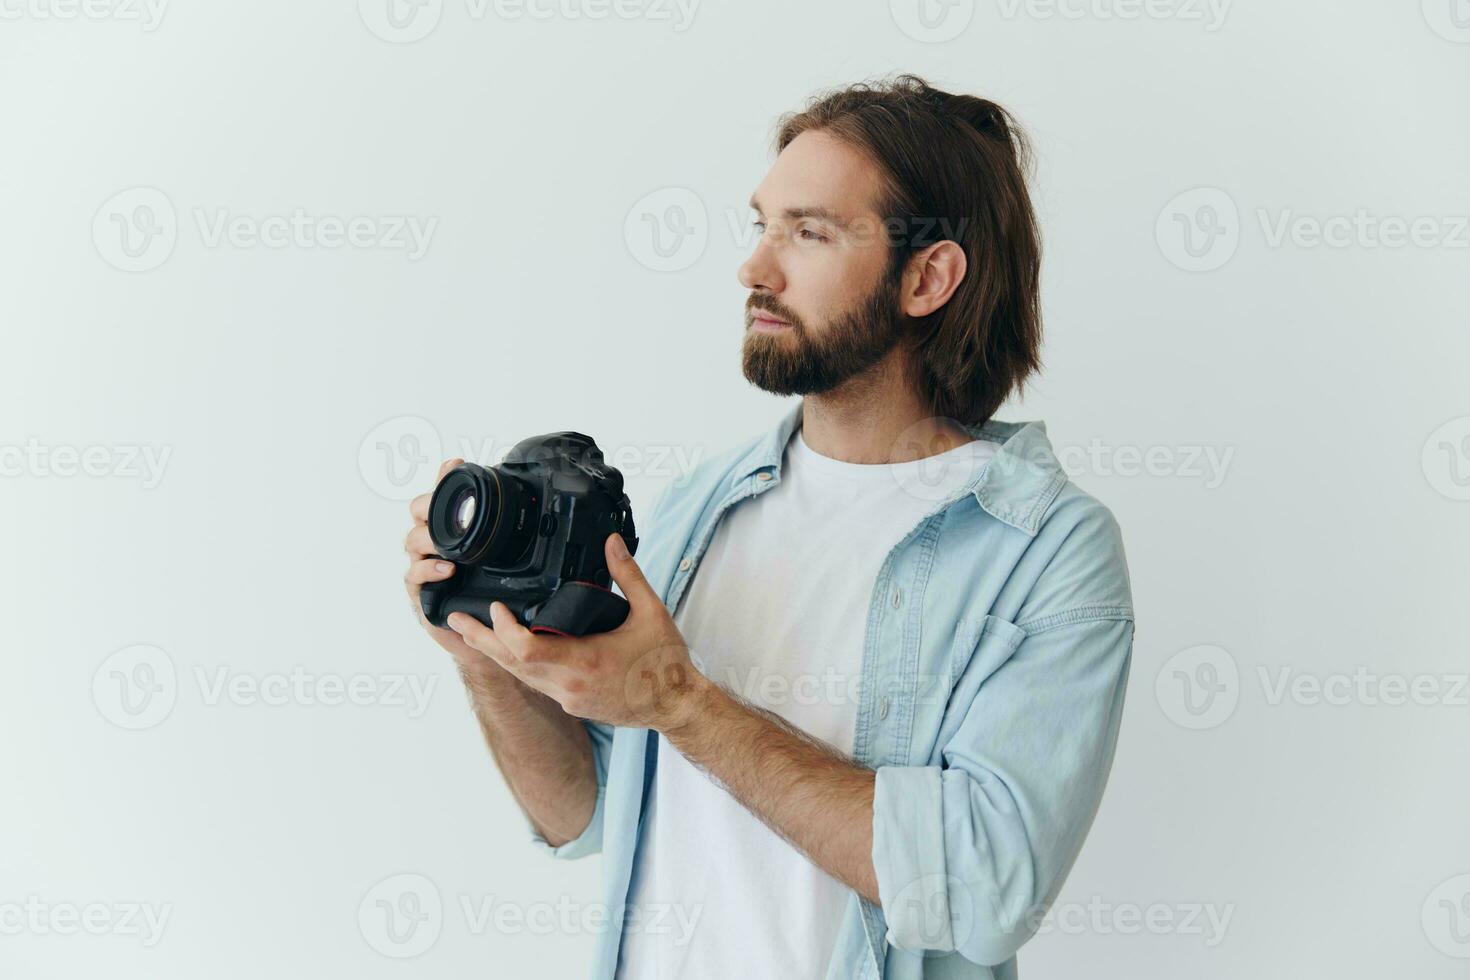 een mannetje hipster fotograaf in een studio tegen een wit achtergrond looks door de camera zoeker en schiet schoten met natuurlijk licht van de venster. levensstijl werk net zo een freelance fotograaf foto